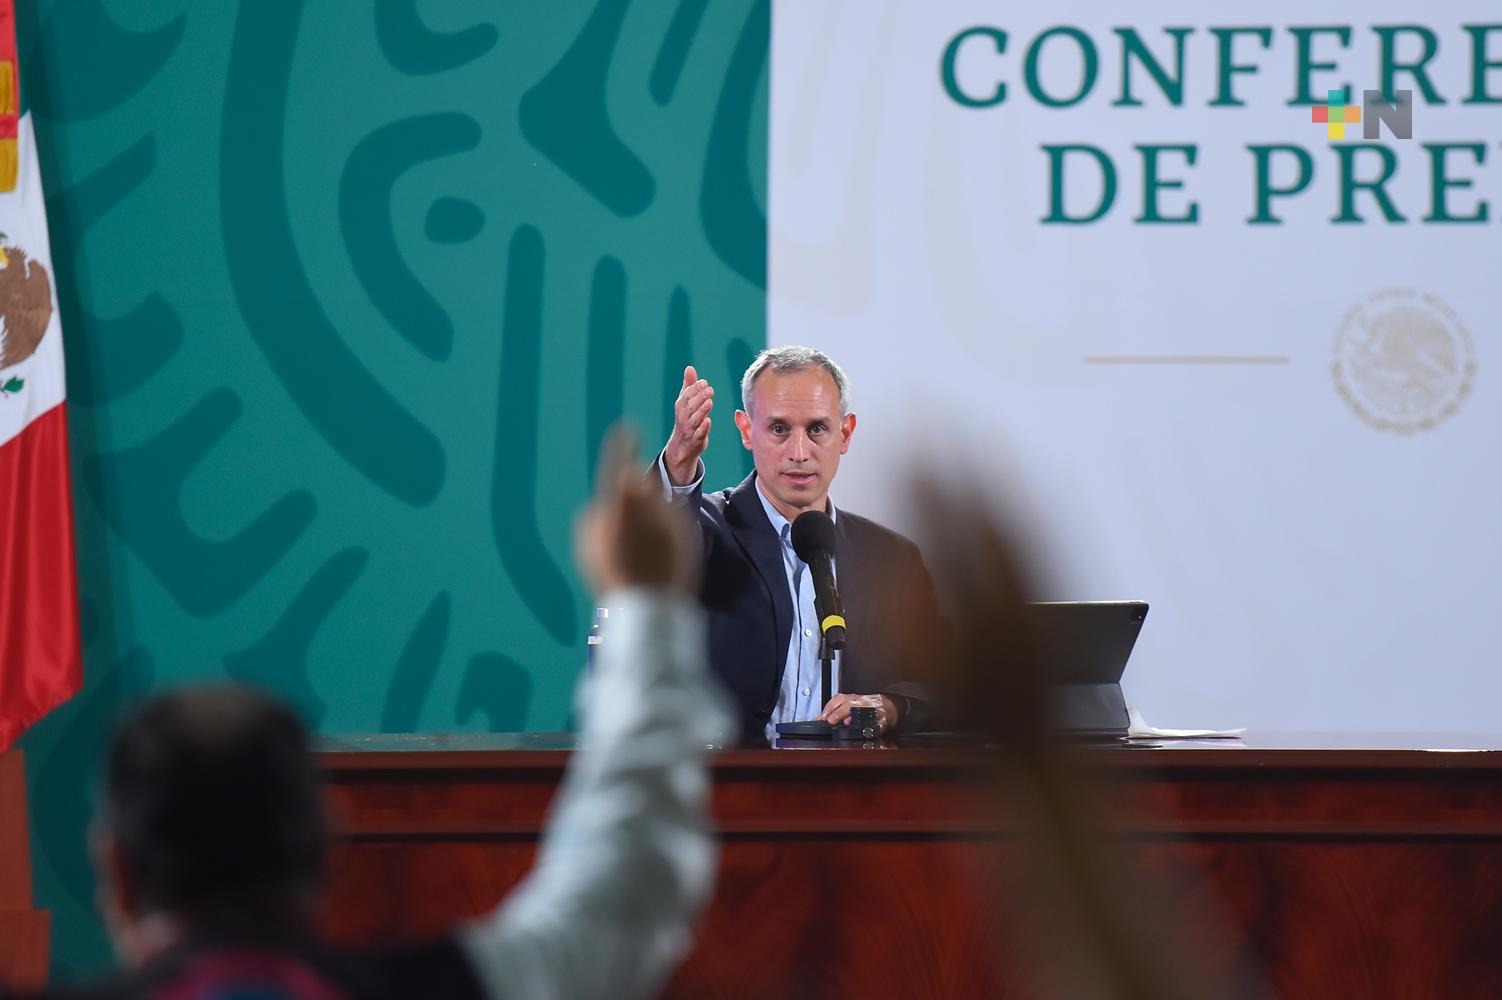 Concluyen conferencias de prensa sobre COVID-19 en México, anuncia López Gatell